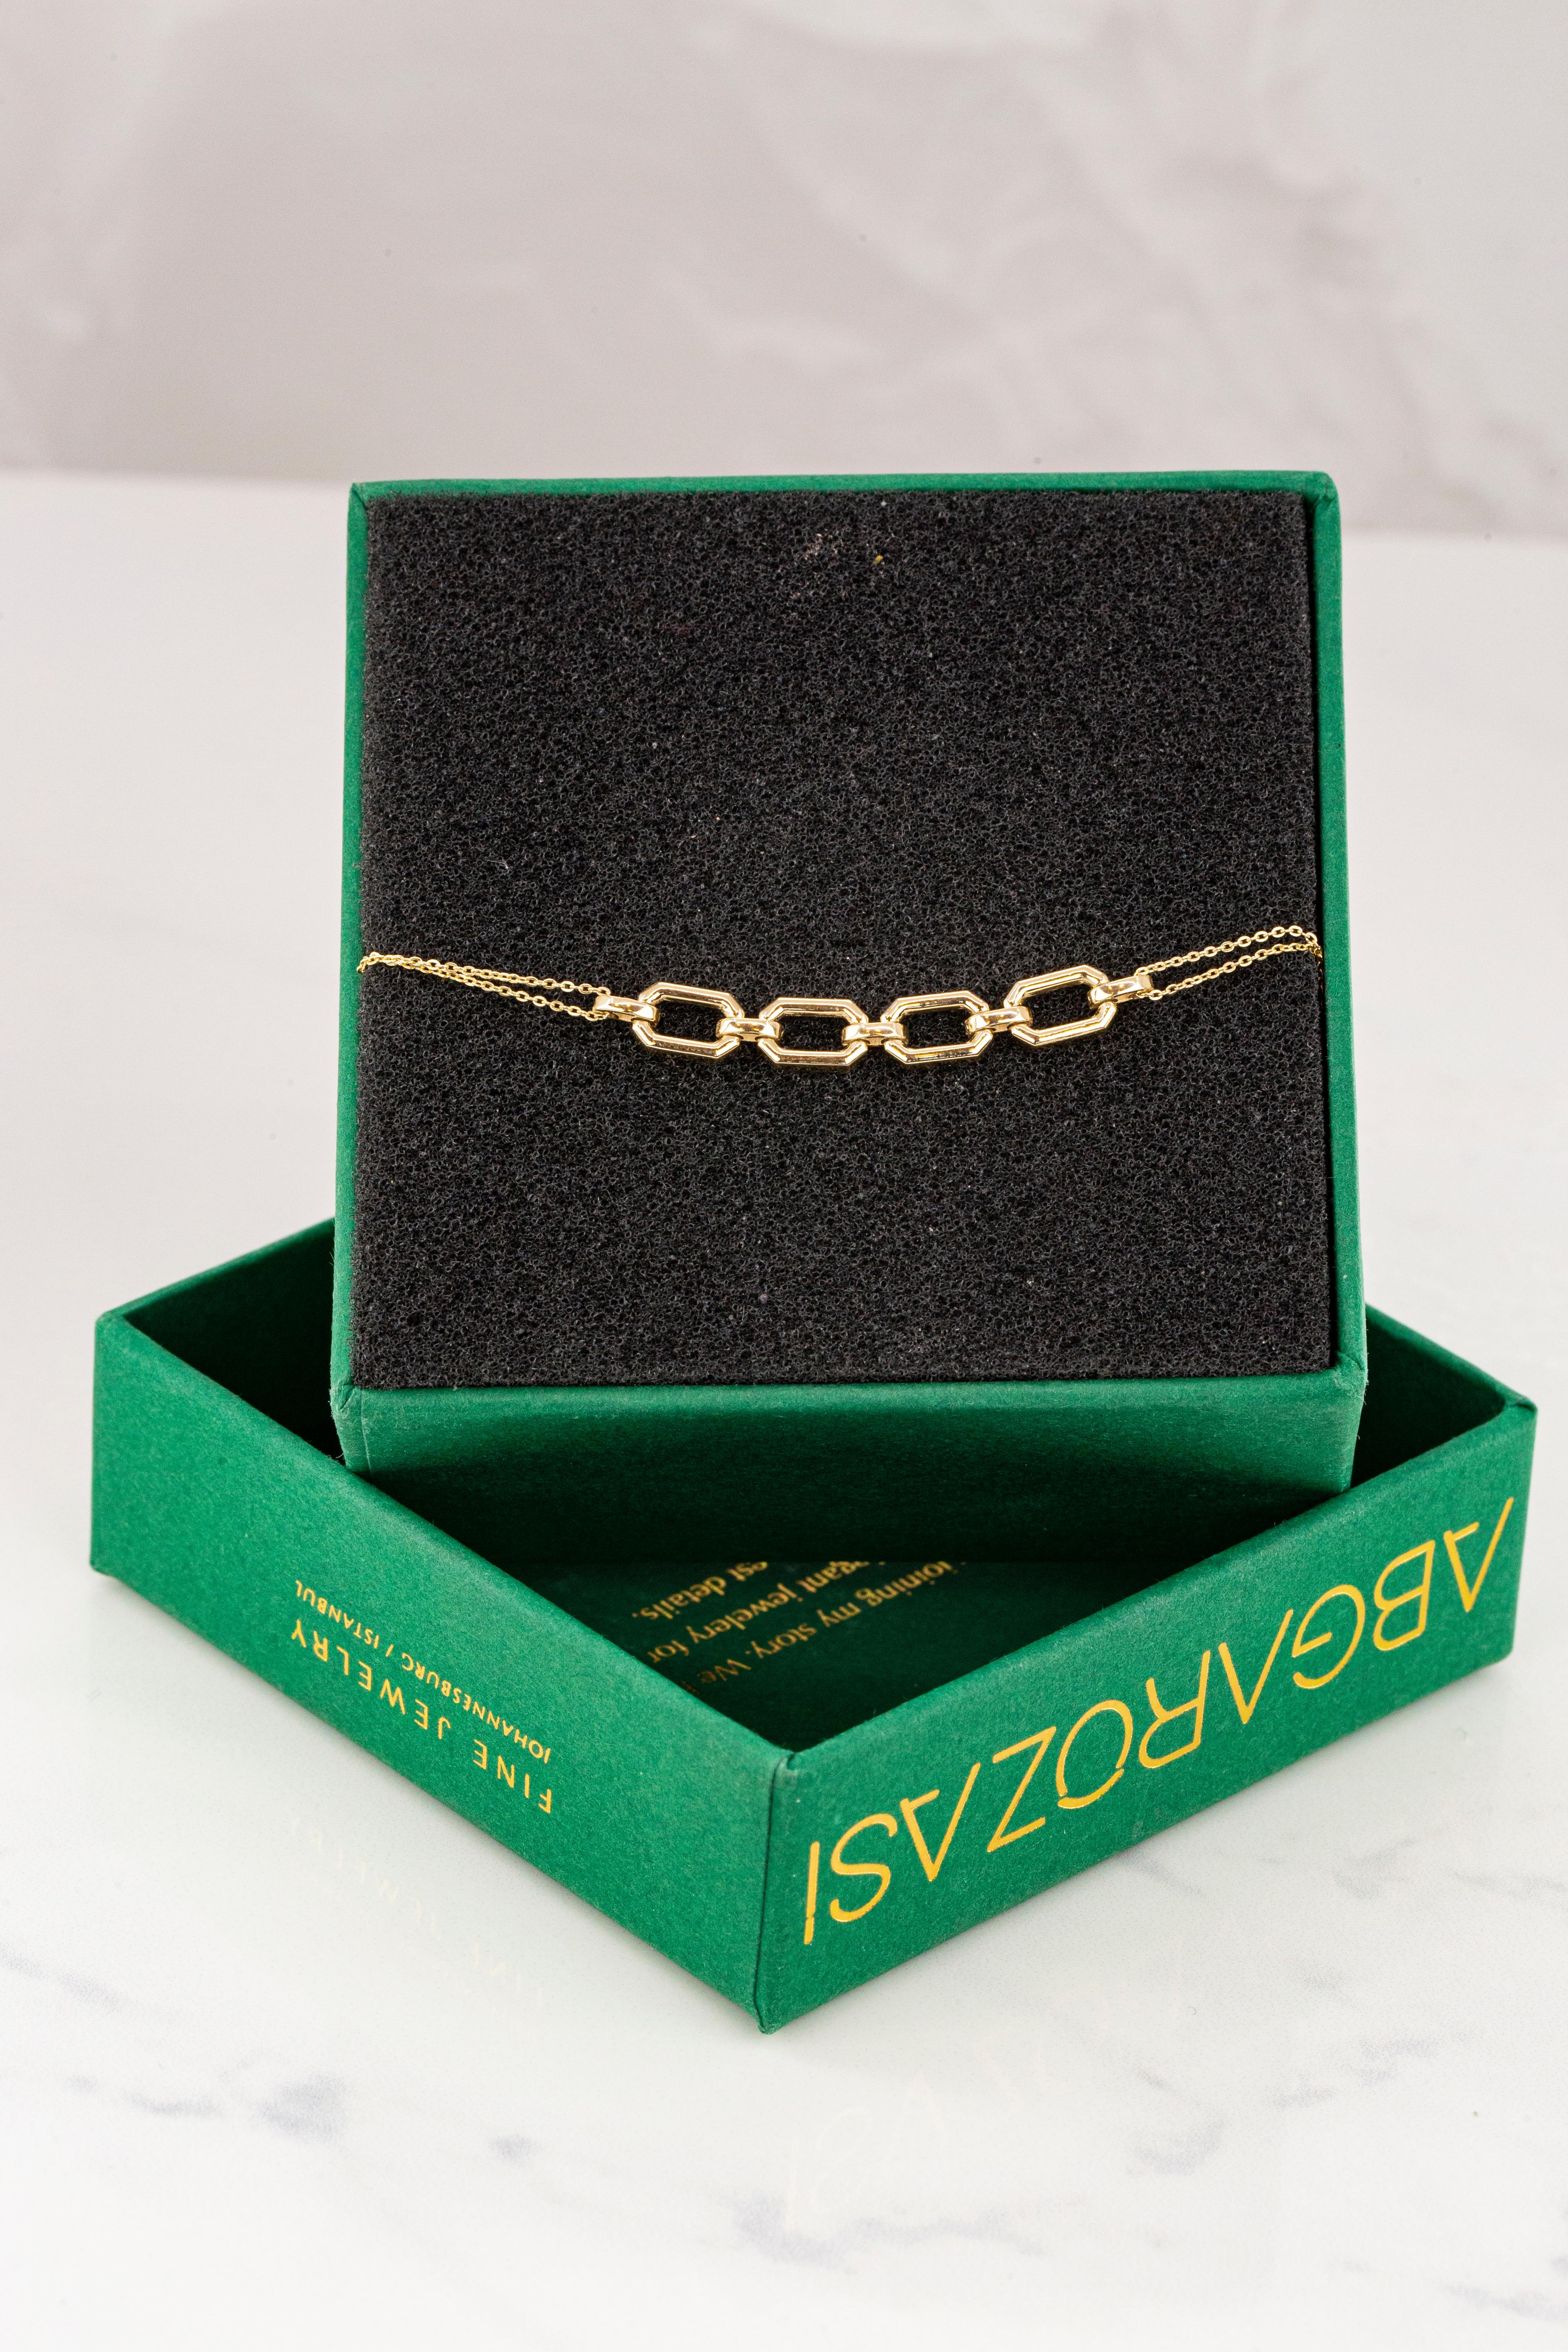 Bracelet en or 14K avec chaîne audacieuse, bracelet en chaîne en or 14k, bracelet rectangle bracelet délicat créé par les mains de la chaîne aux formes des pierres. De bonnes idées de bracelet délicat ou de bracelet empilable pour elle.

Ce bracelet